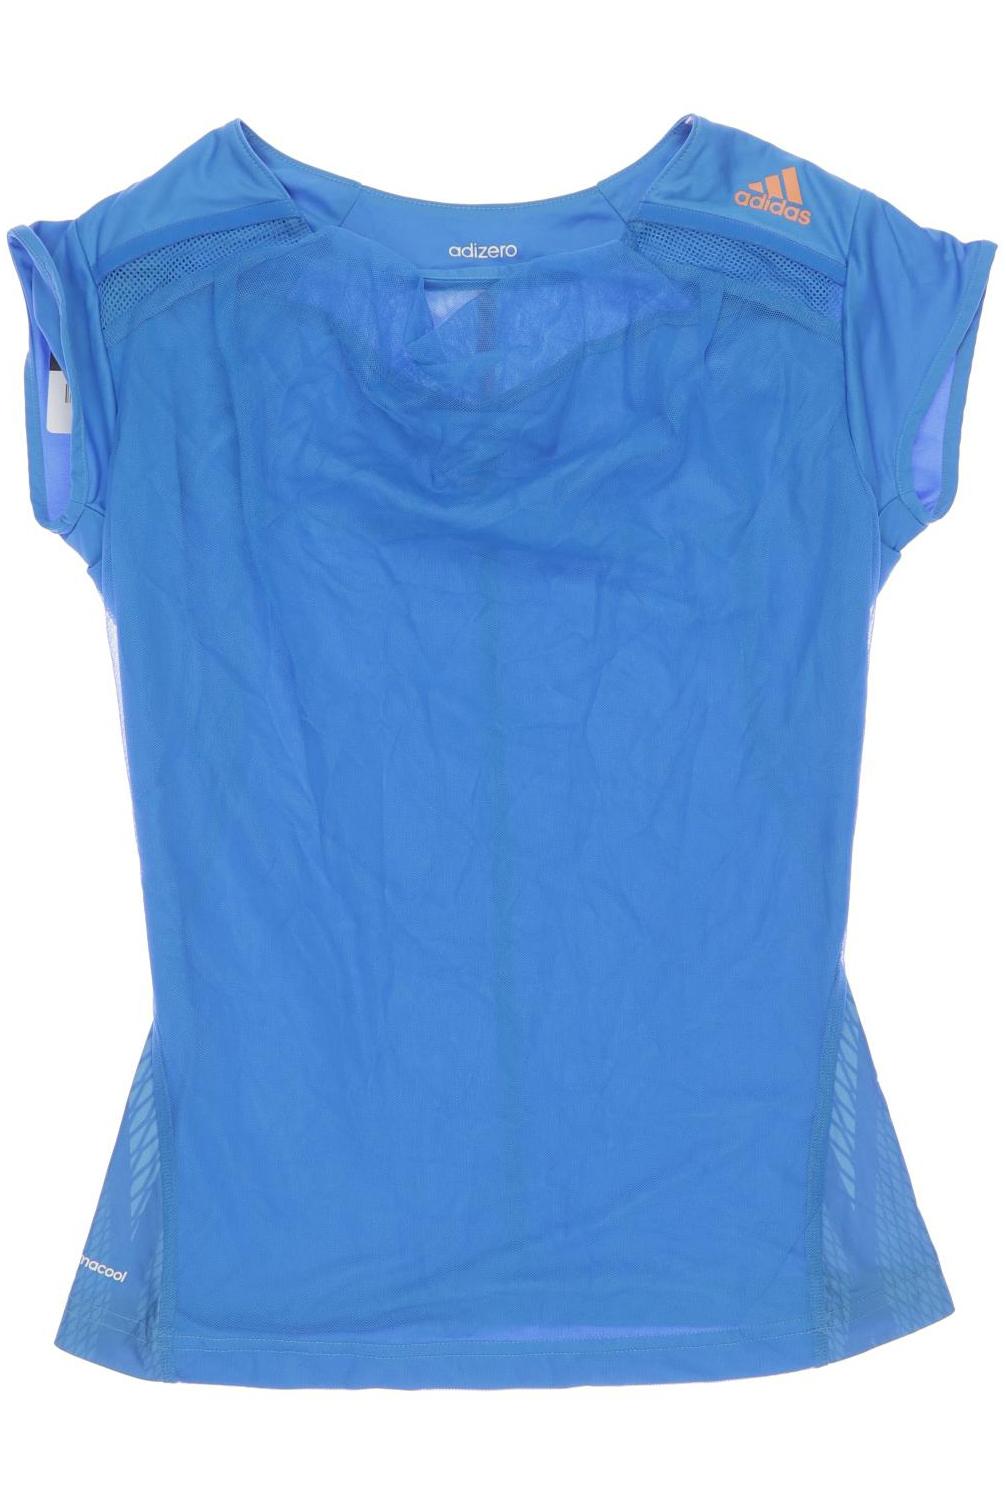 adidas Mädchen T-Shirt, blau von Adidas